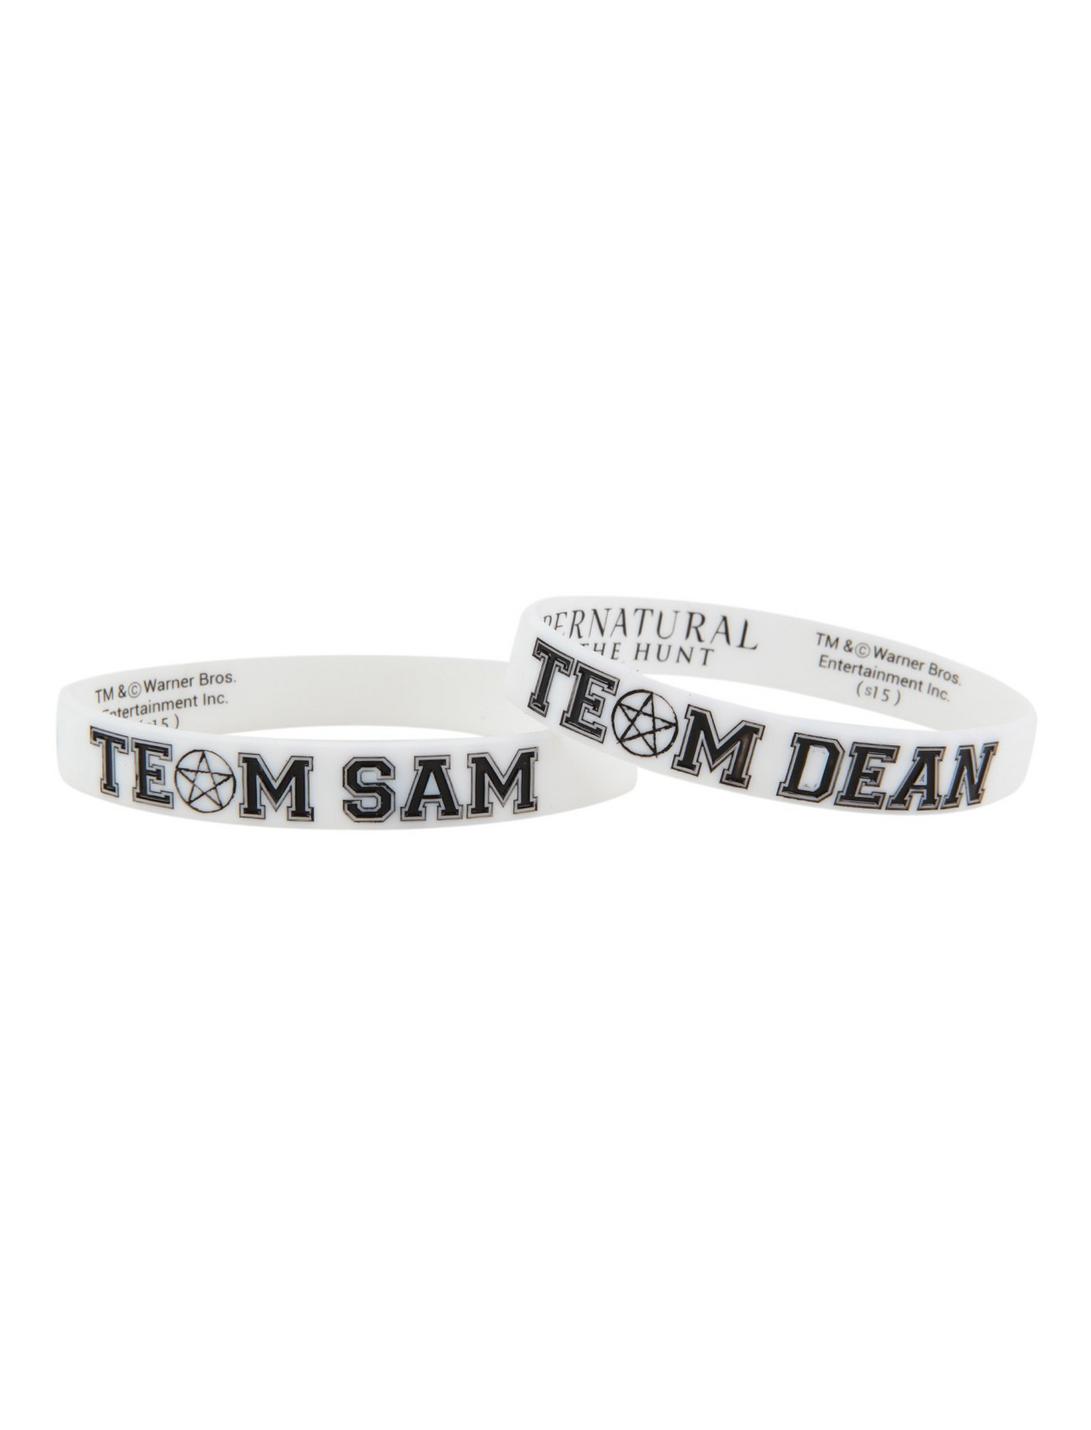 Supernatural Team Sam Team Dean Rubber Bracelet 2 Pack, , hi-res